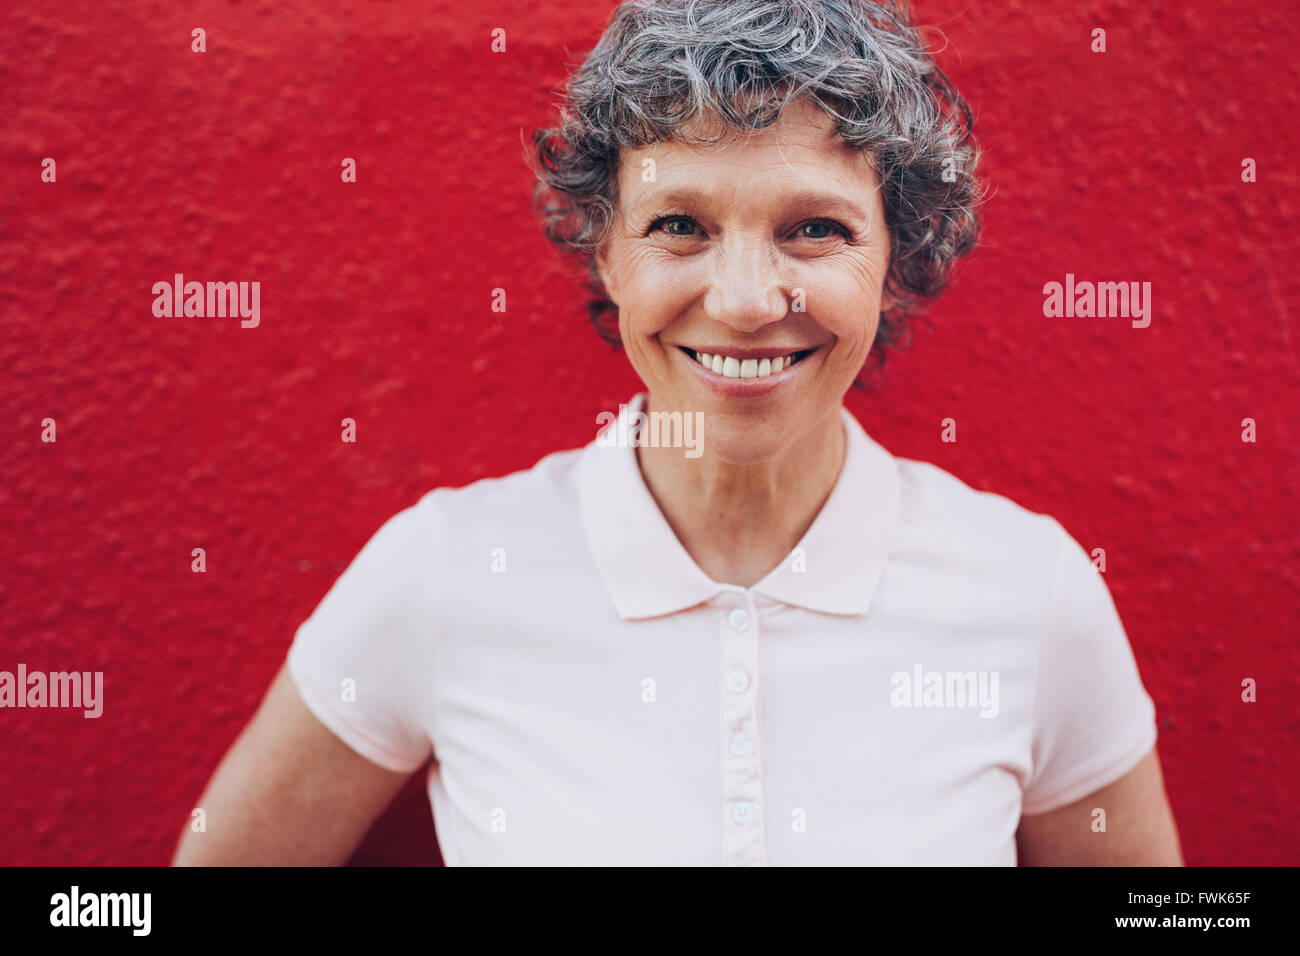 Porträt des Lächelns Reife Frau vor rotem Hintergrund hautnah. Applying Frau mit schönen Lächeln. Stockfoto